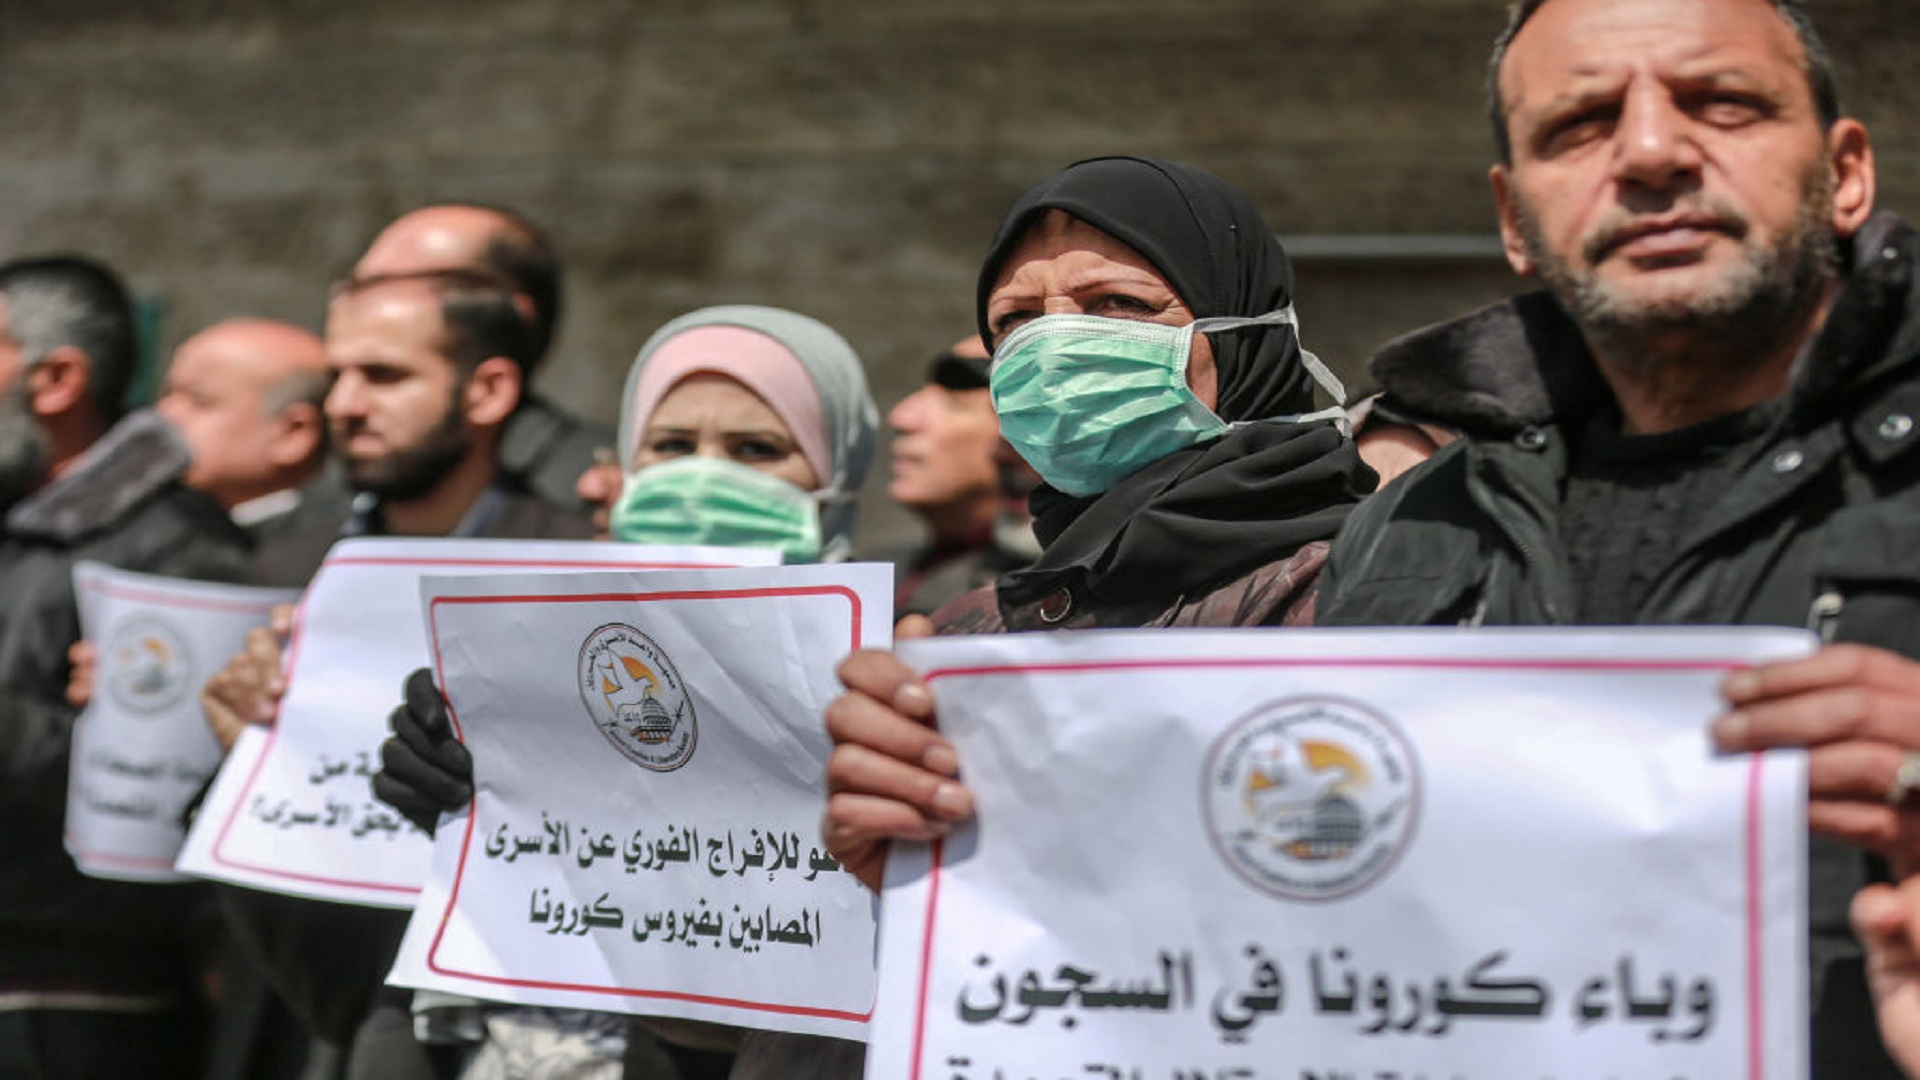 نادي الأسير تافلسطيني يعلن عن إصابة المعتقلين في سجون الاحتلال بفيروس كورونا